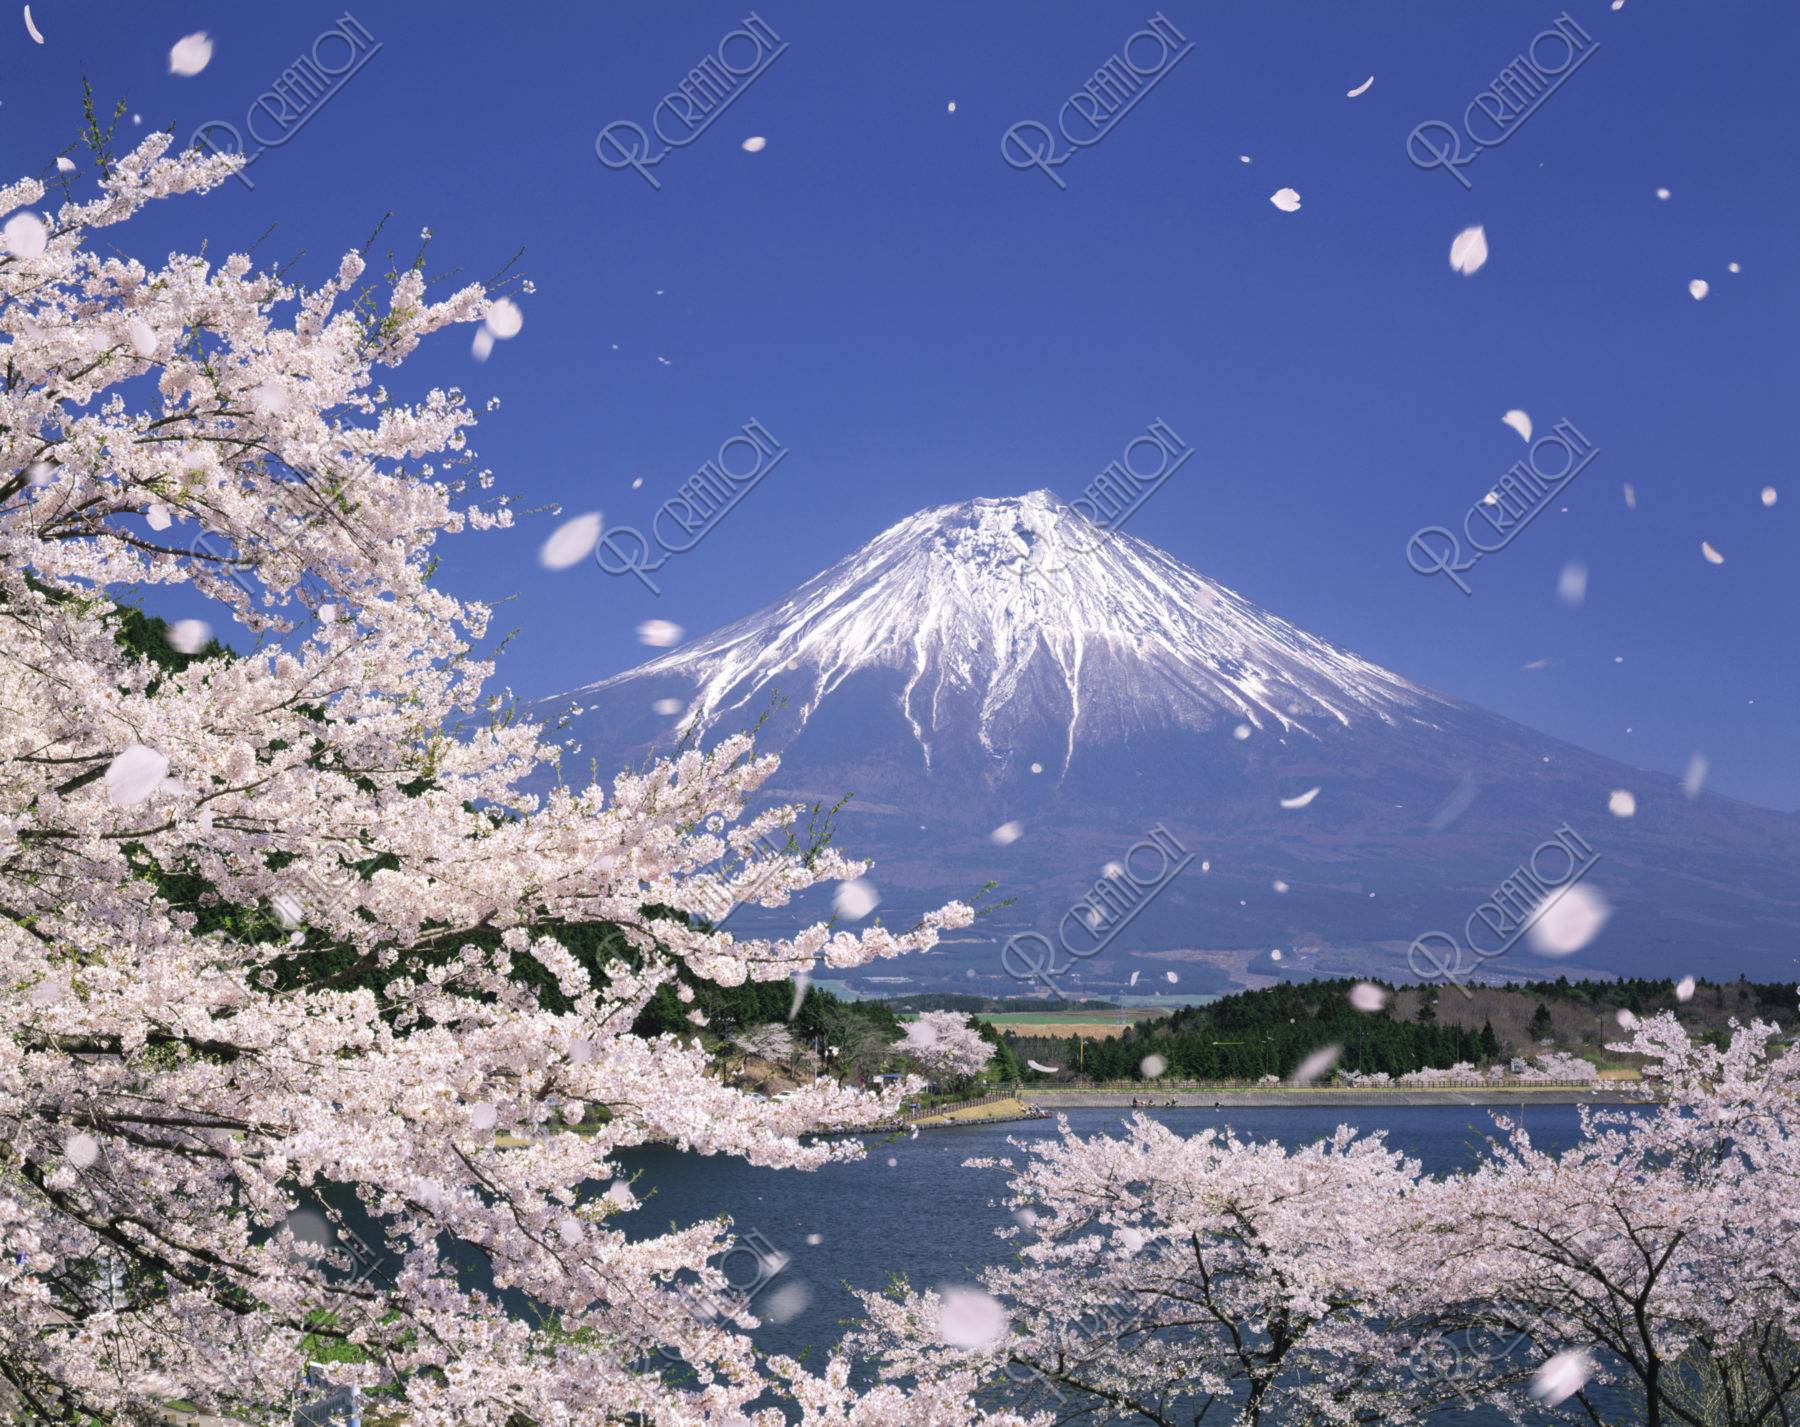 桜 桜吹雪 花吹雪 散る 富士山 田貫湖 合成 ストックフォト アールクリエーション